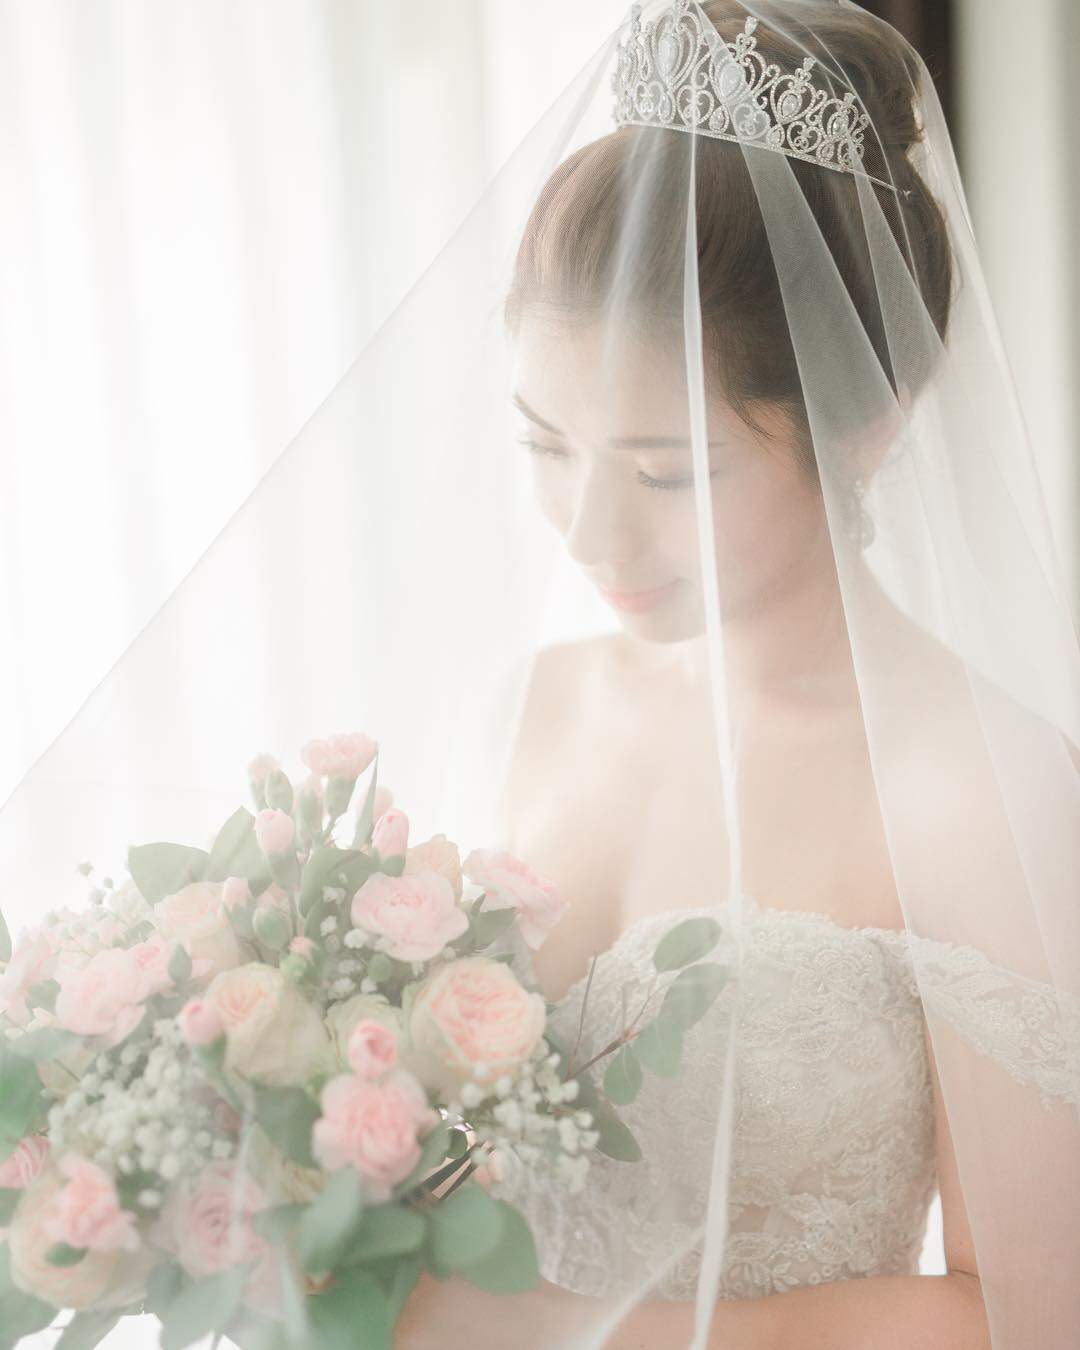 名婚紗攝影師 Angel Cheung 解答影婚紗相8大常見疑問